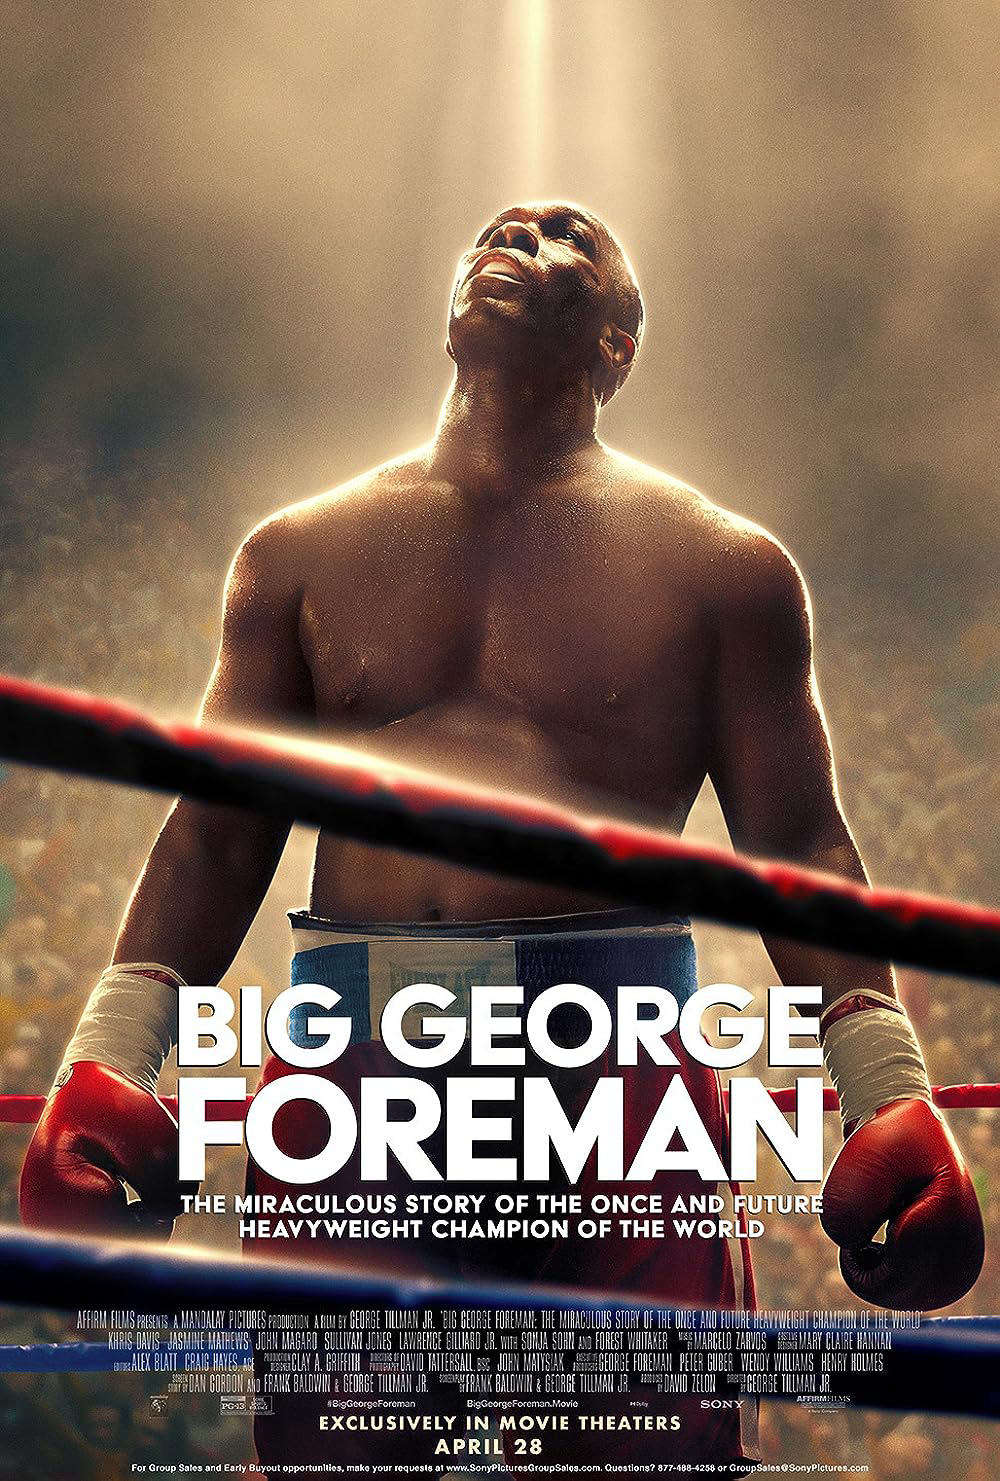 Poster Phim Big George Foreman: Câu chuyện kỳ diệu về nhà vô địch quyền Anh hạng nặng (Big George Foreman: The Miraculous Story of the Once and Future Heavyweight Champion of the World)